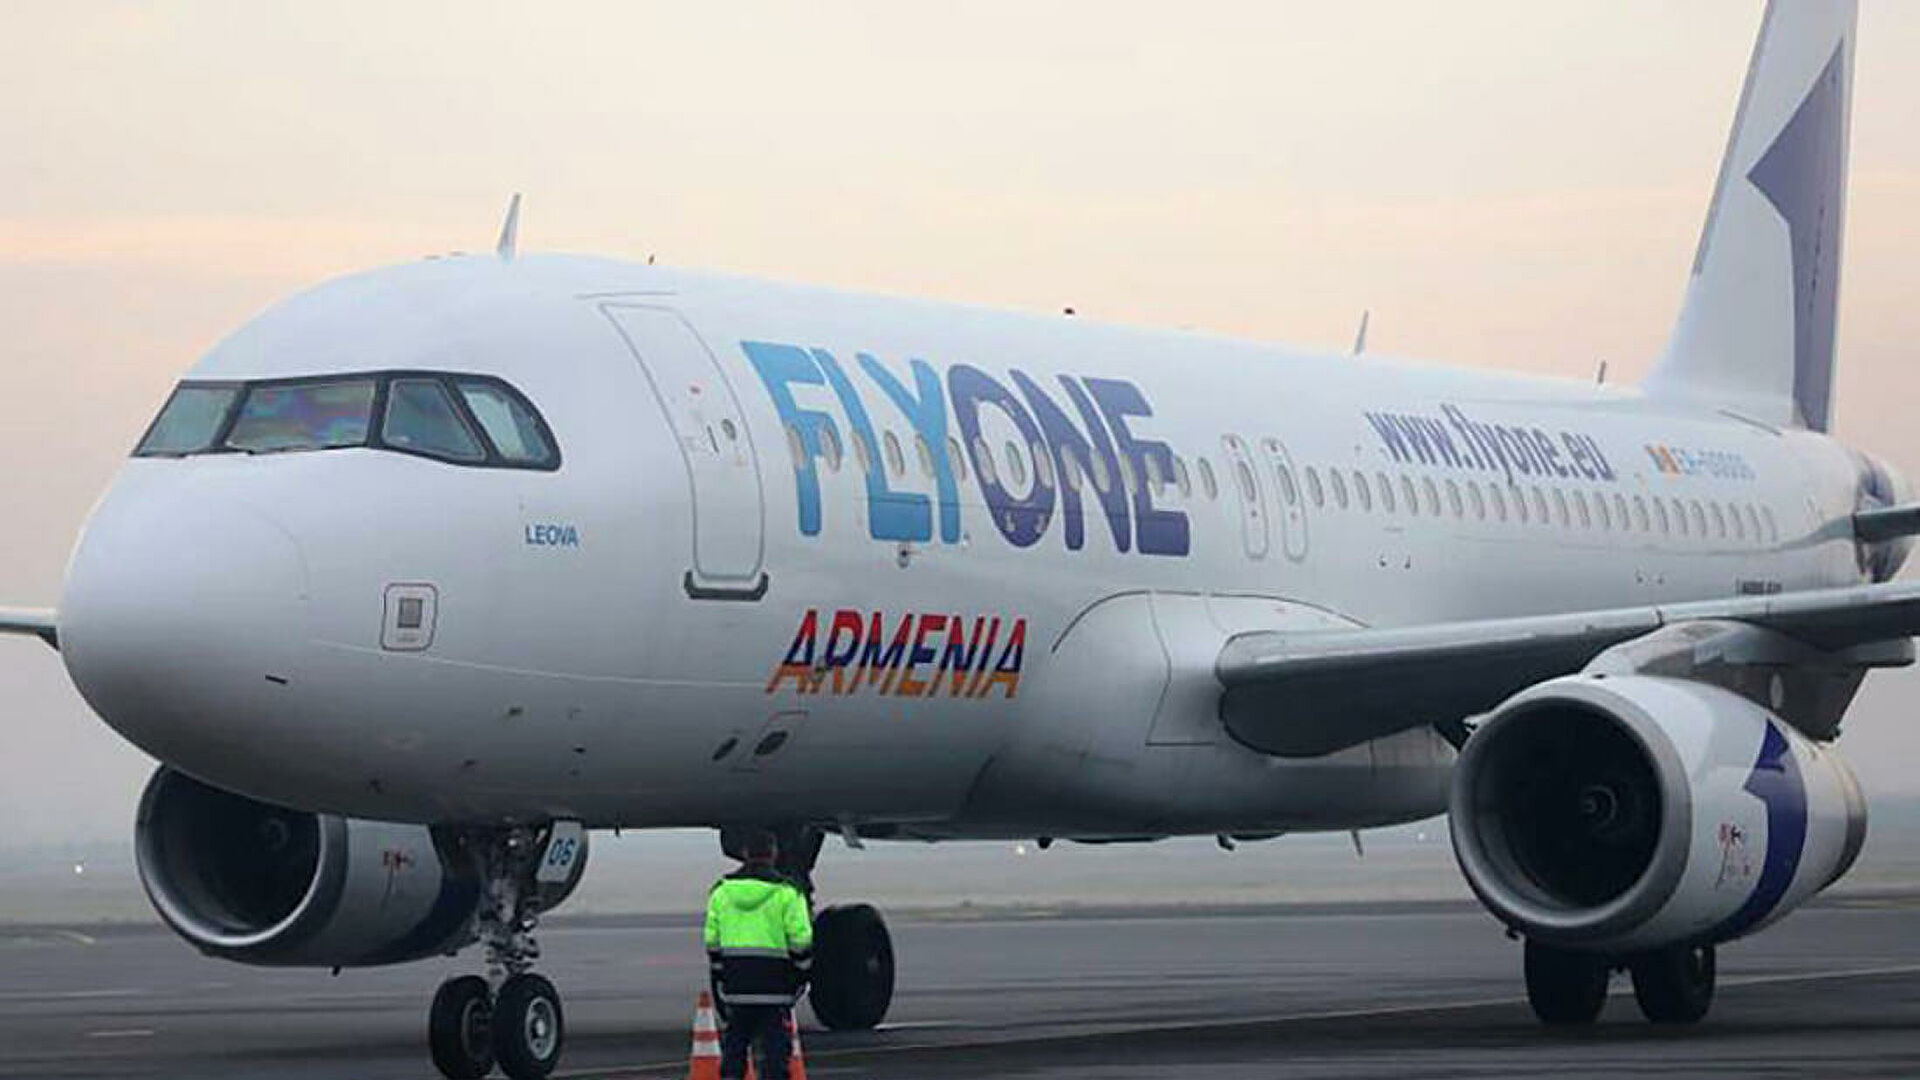 FLYONE Armenia ավիաընկերությունը Վրաստան թռիչքներ իրականացնելու թույլտվություն է ստացել